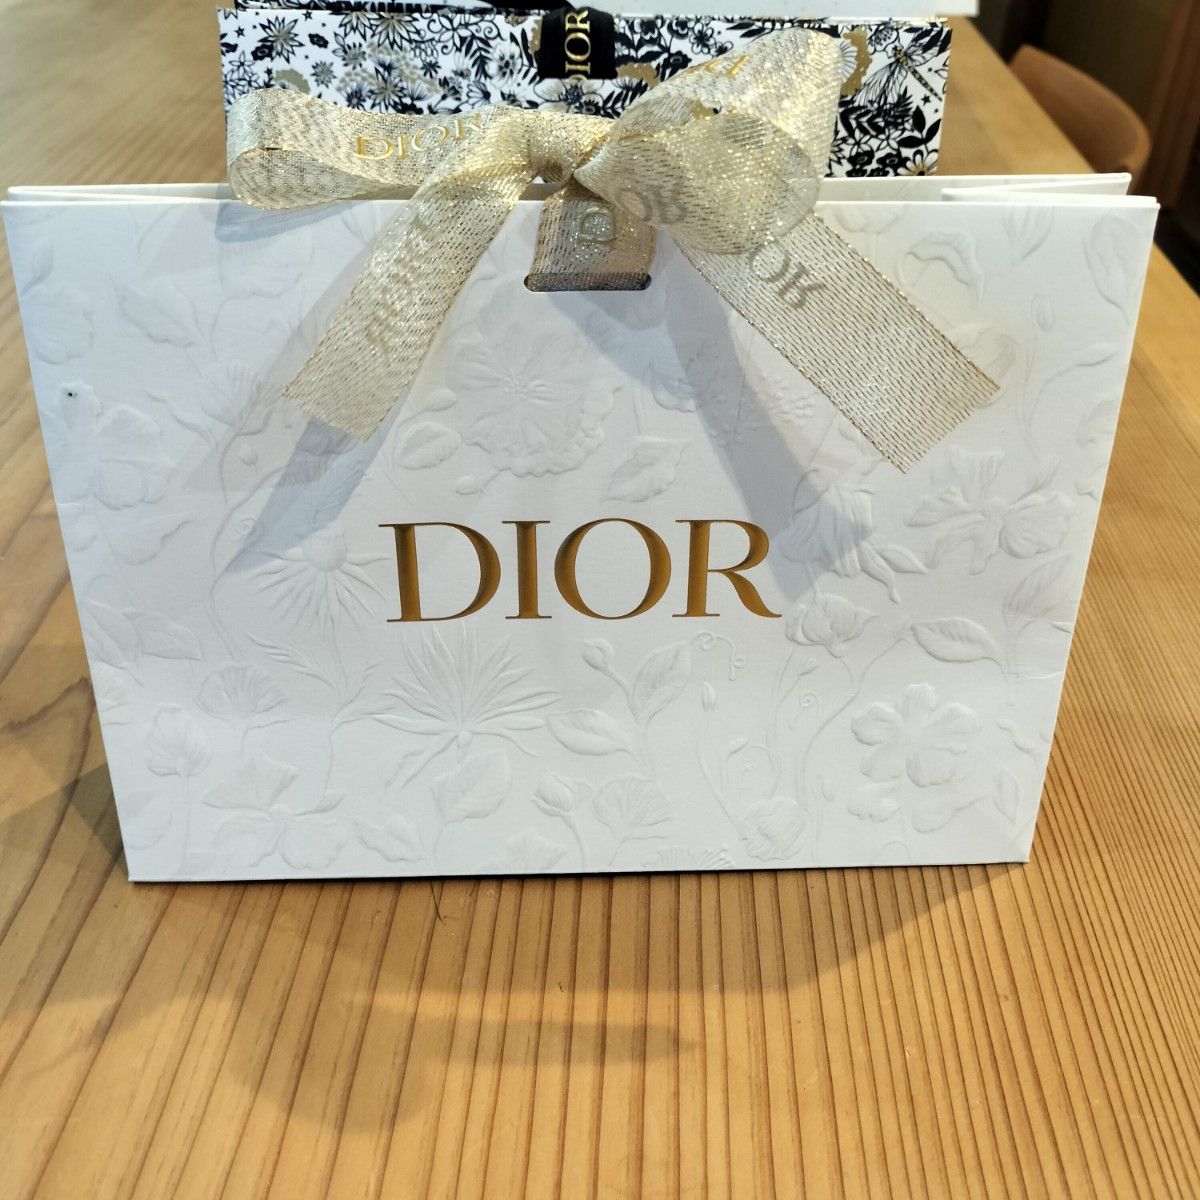 Dior CHANEL コスメ 袋 紙袋 ショップ袋 レター  カード ブランド ショッパー ギフトボックス ディオール シャネル